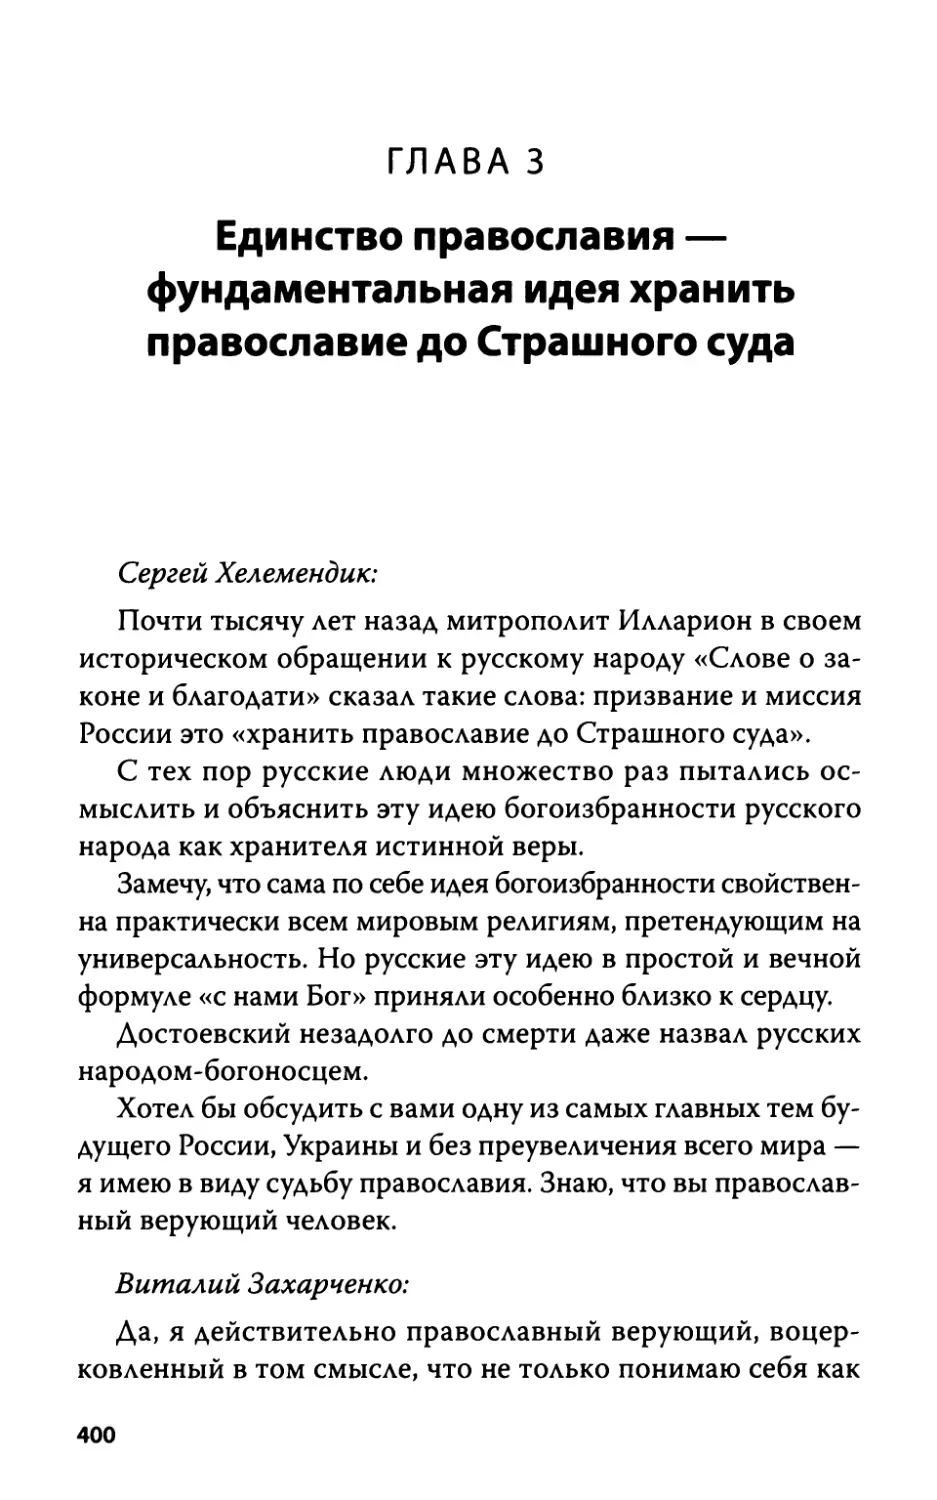 Глава 3. Единство православия - фундаментальная идея хранить православие до Страшного суда